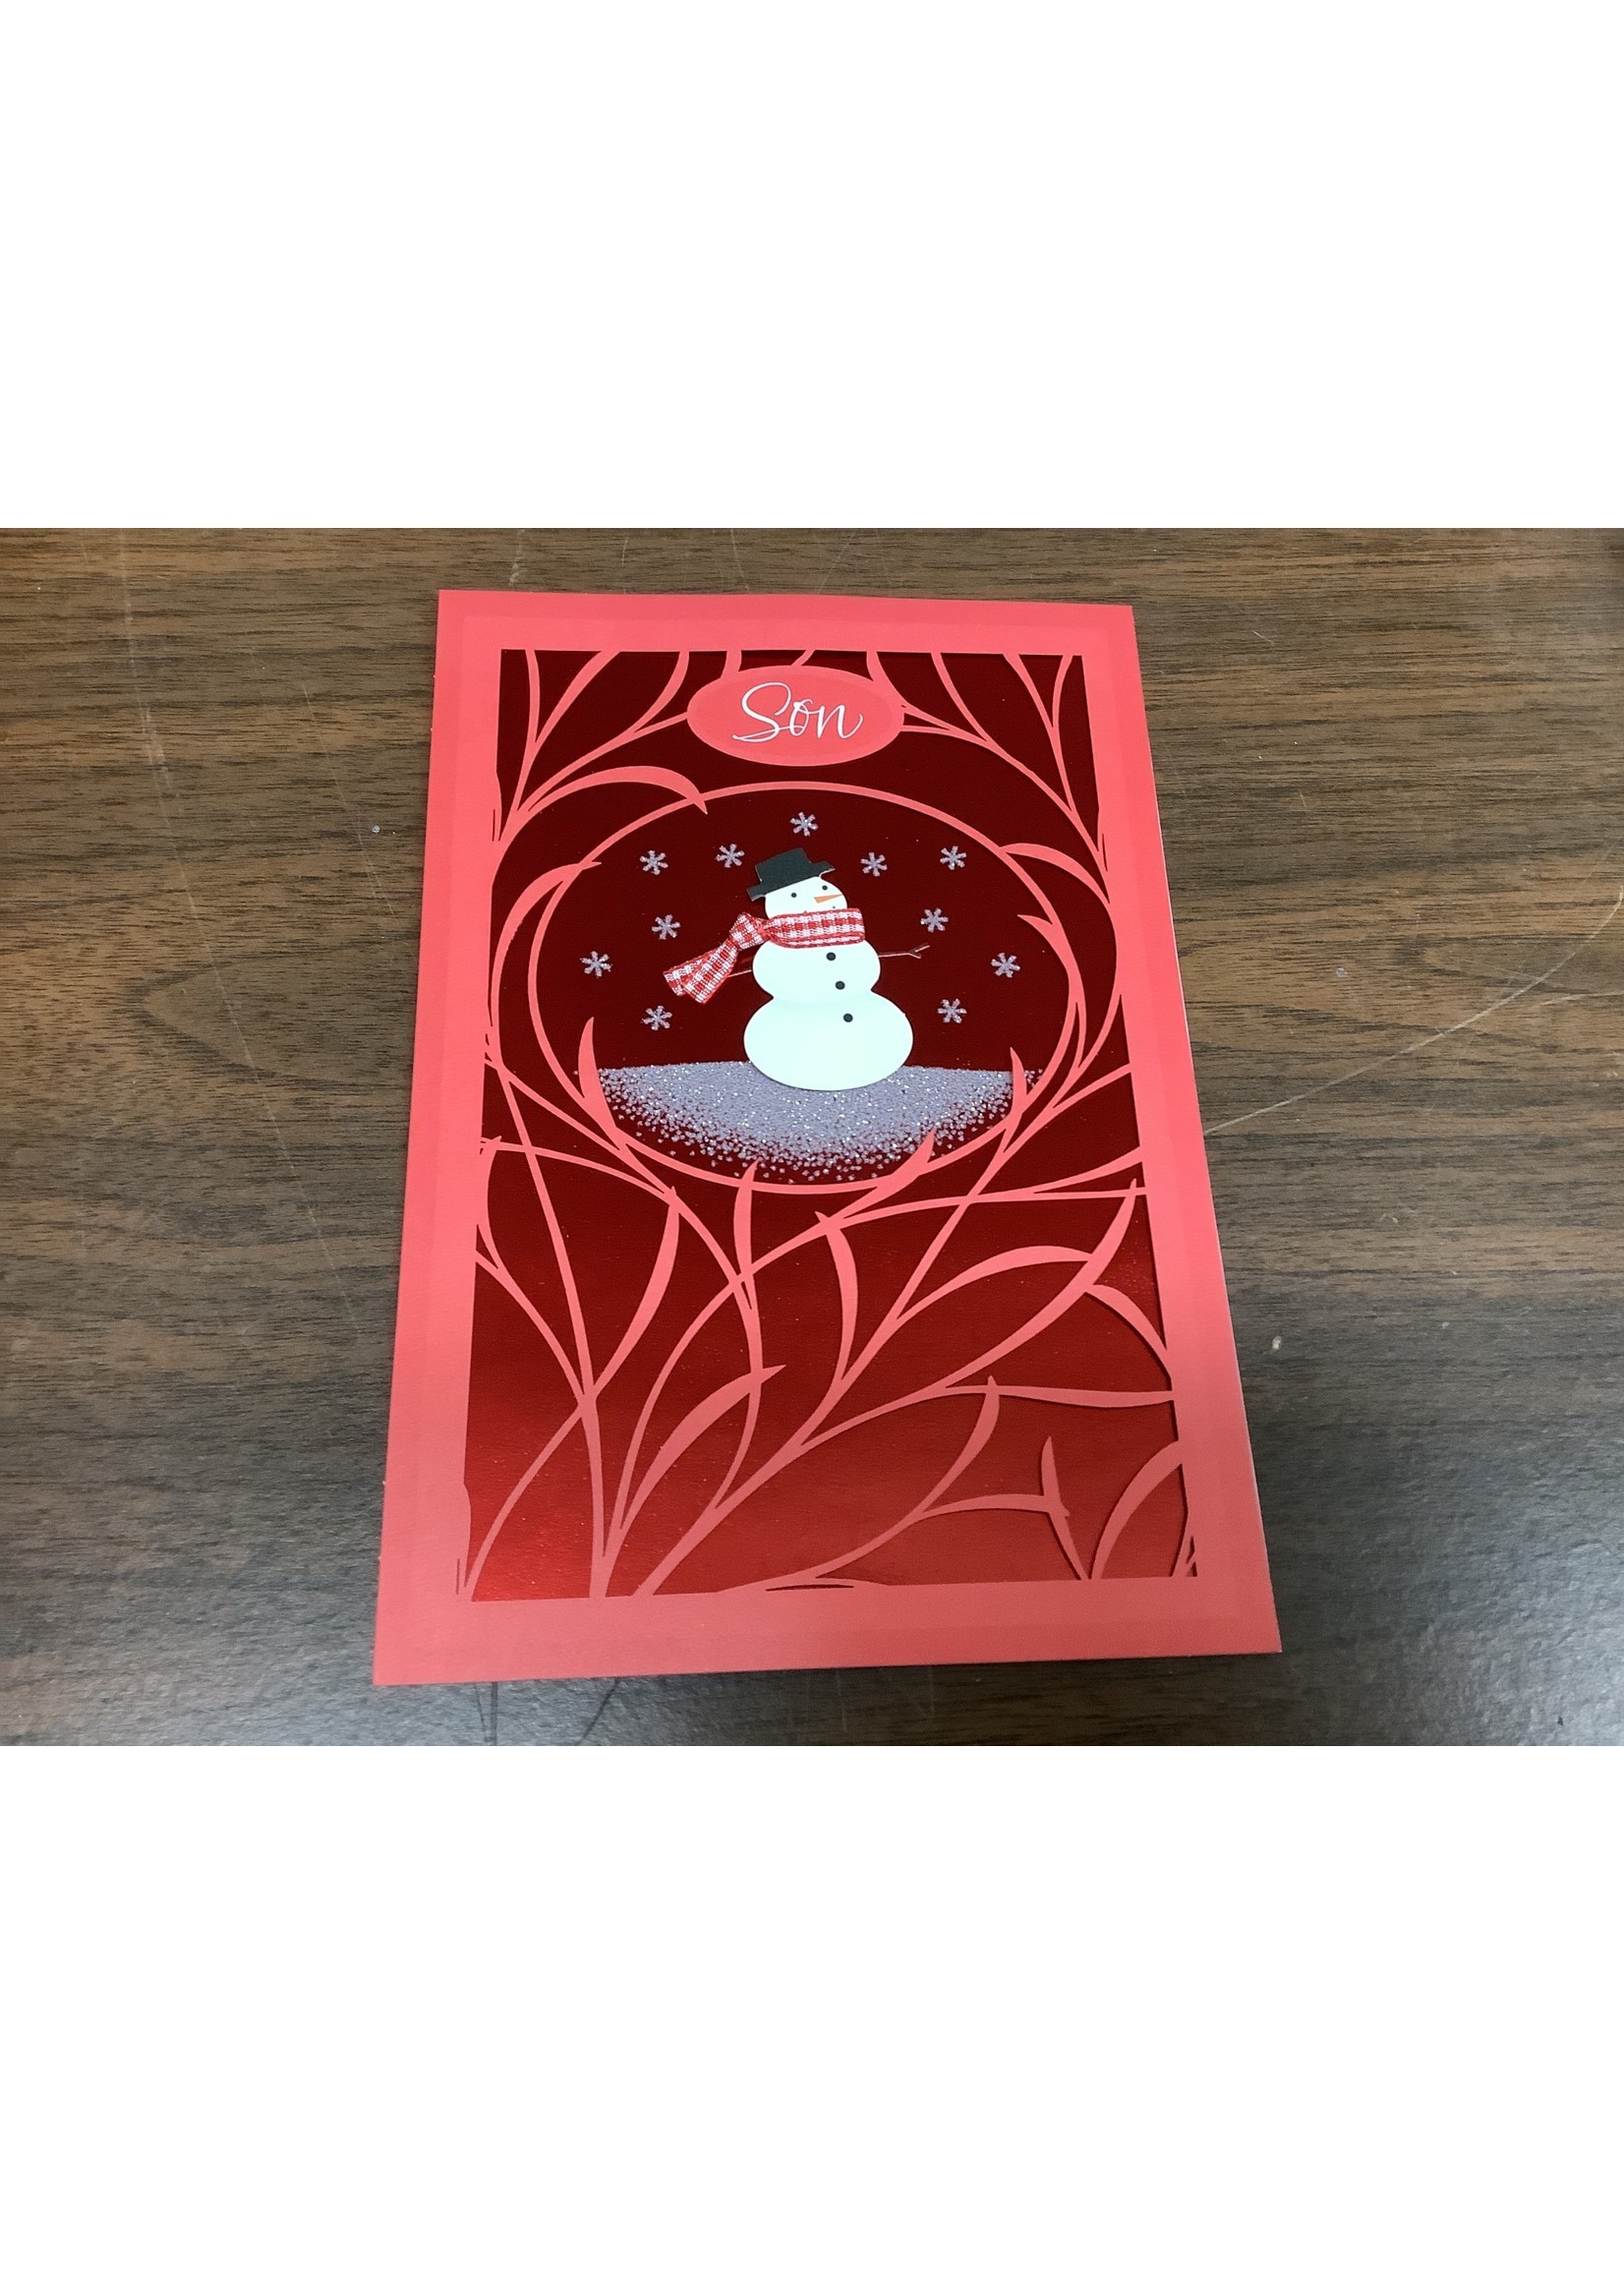 Hallmark Christmas Card For “Son” Packaged